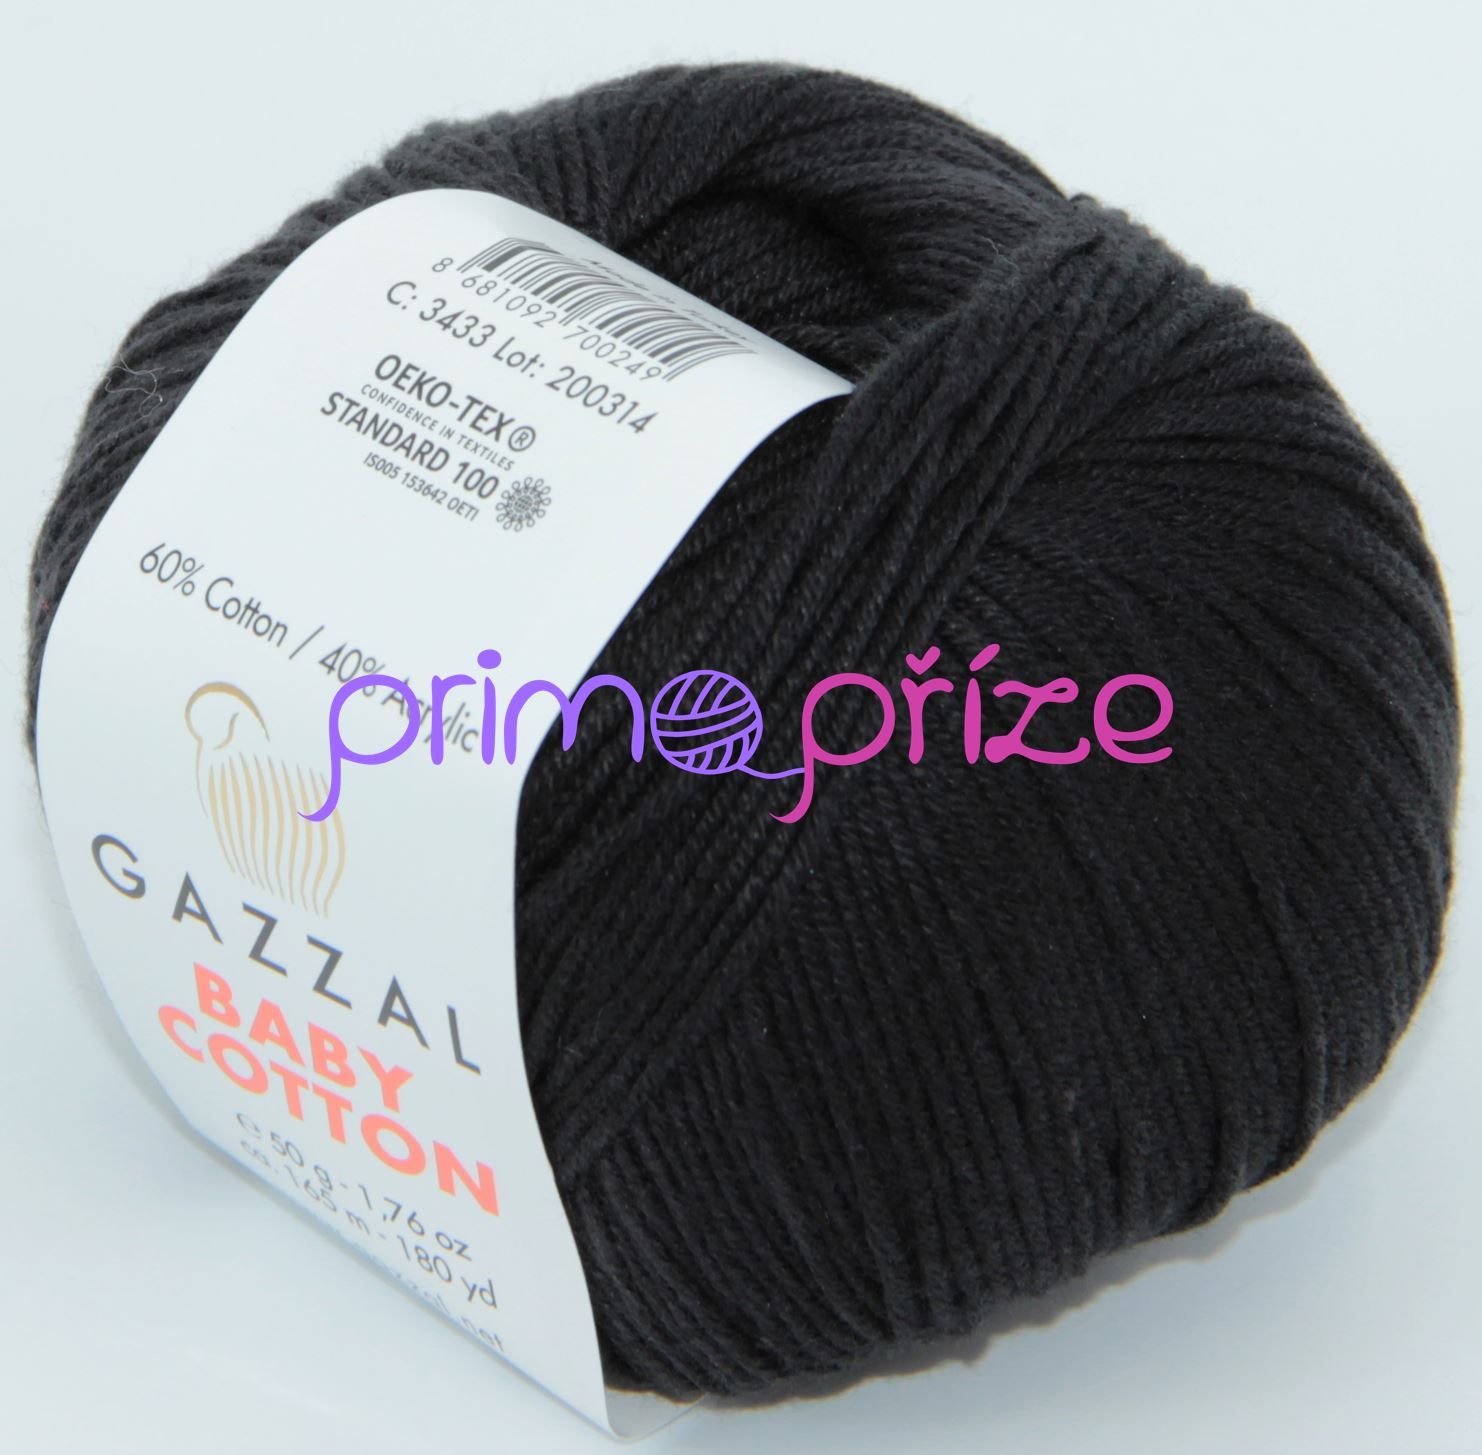 GAZZAL Baby Cotton 3433 černá